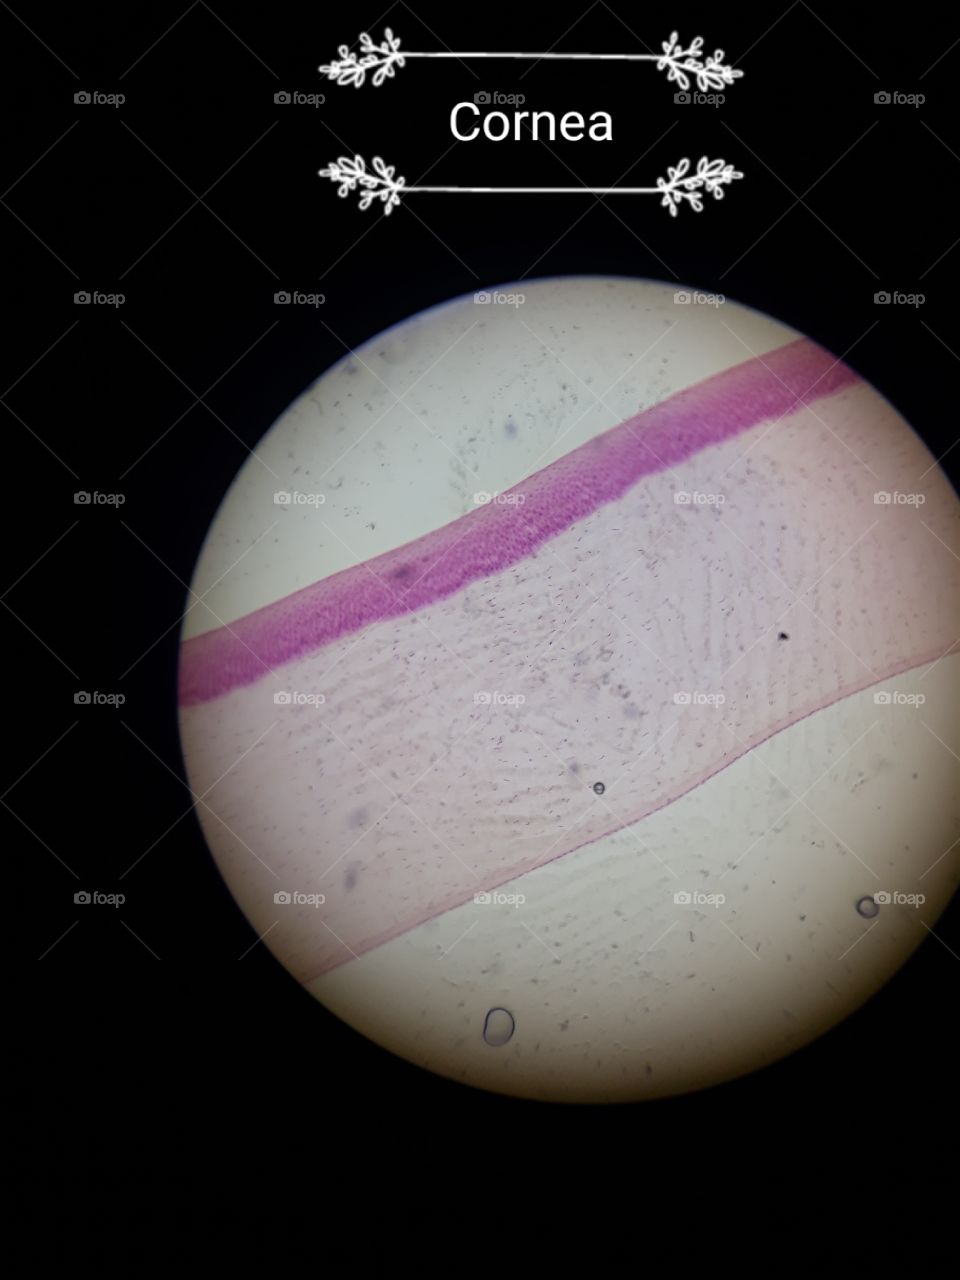 cornea picture under microscope